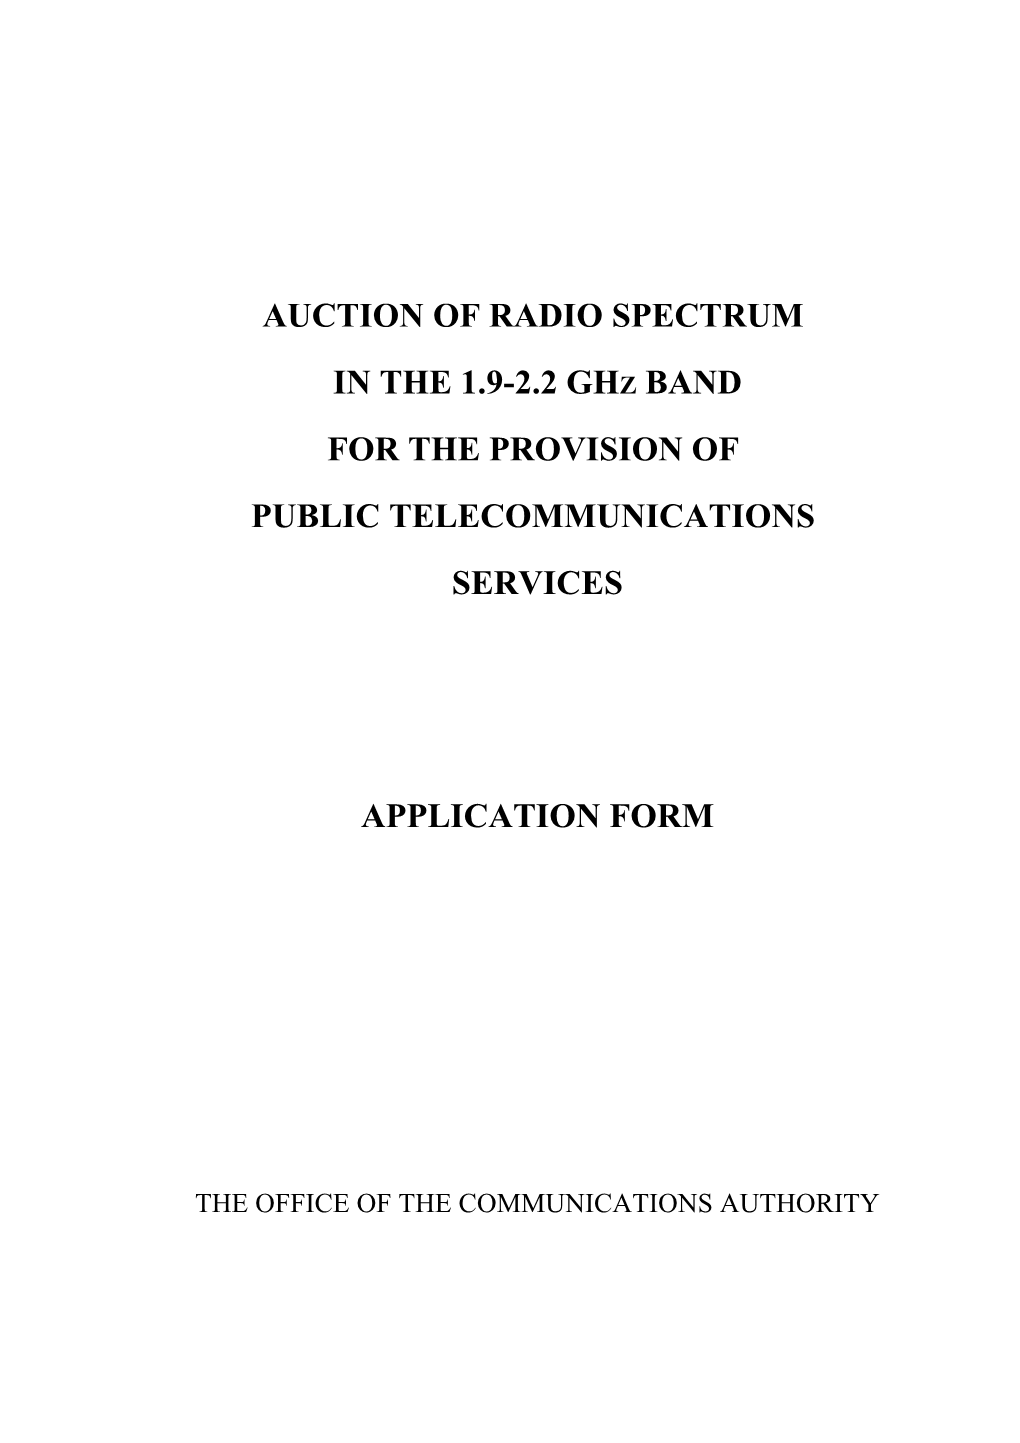 Auction of Radio Spectrum